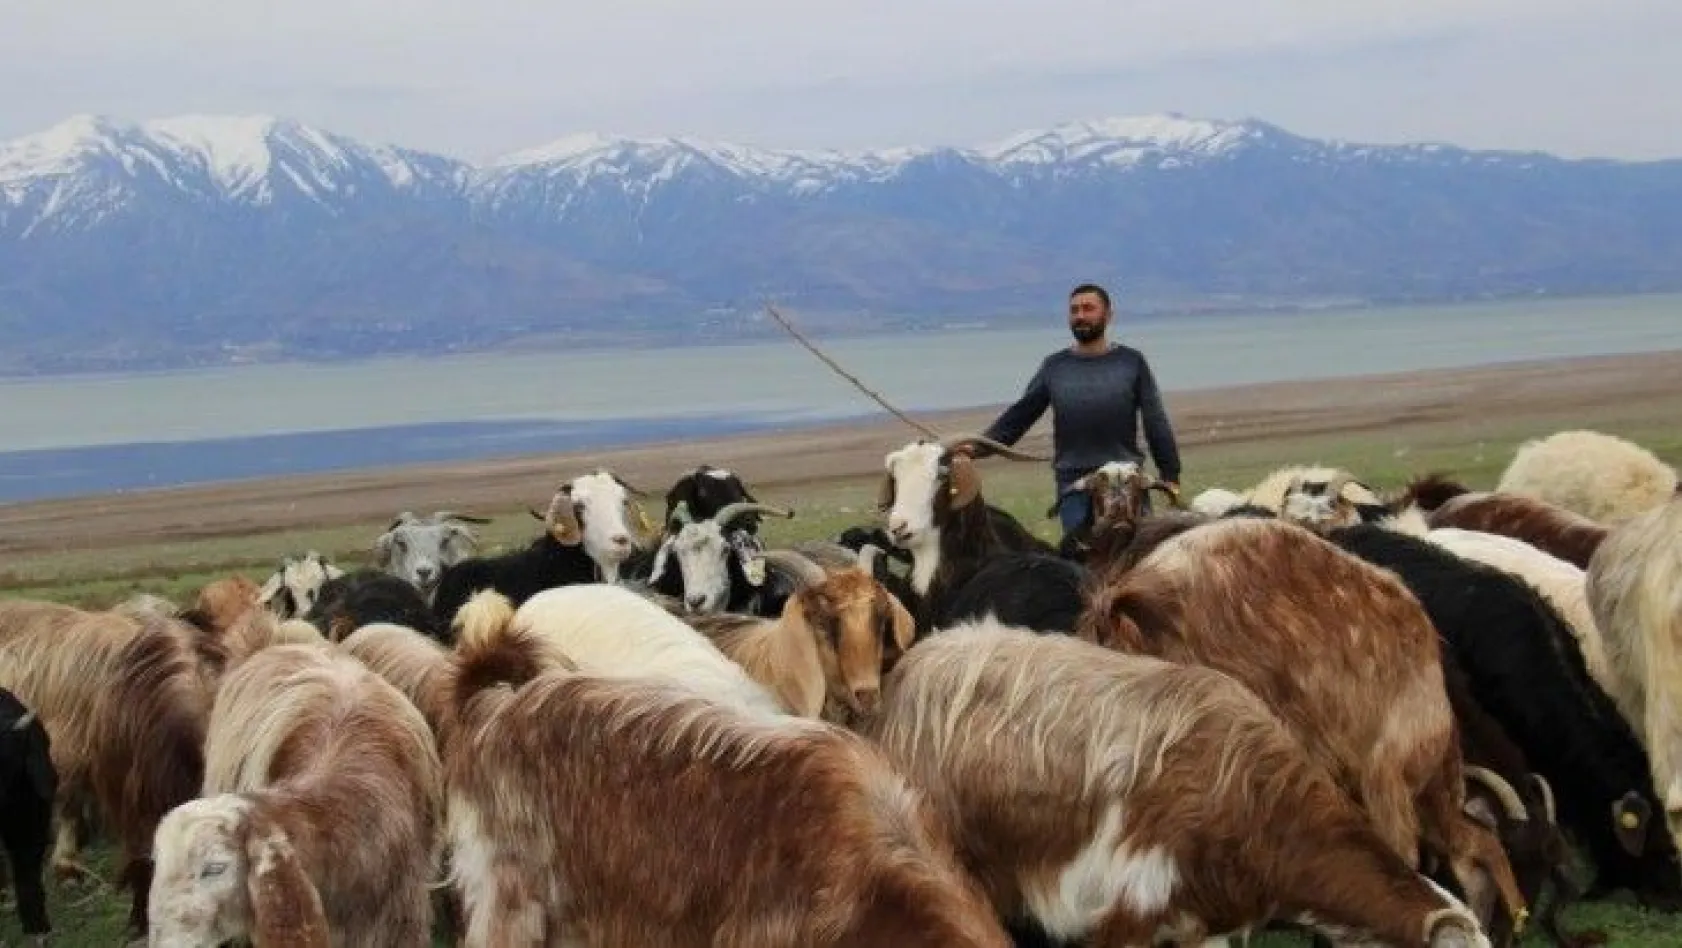 Süt için aldığı keçiler çift çift kuzulayınca sürü sahibi oldu